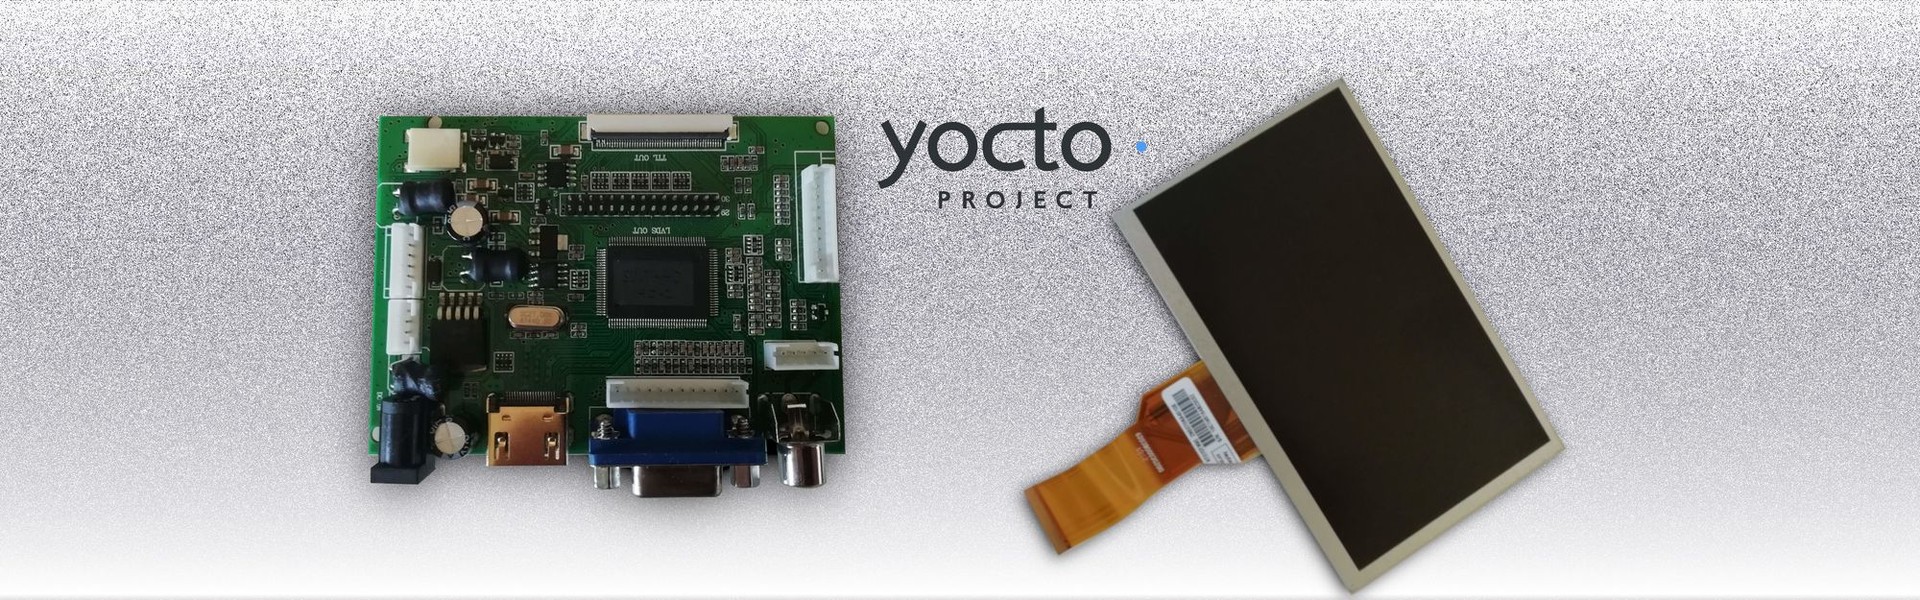 Embedded Linux Image mittels Yocto erstellen